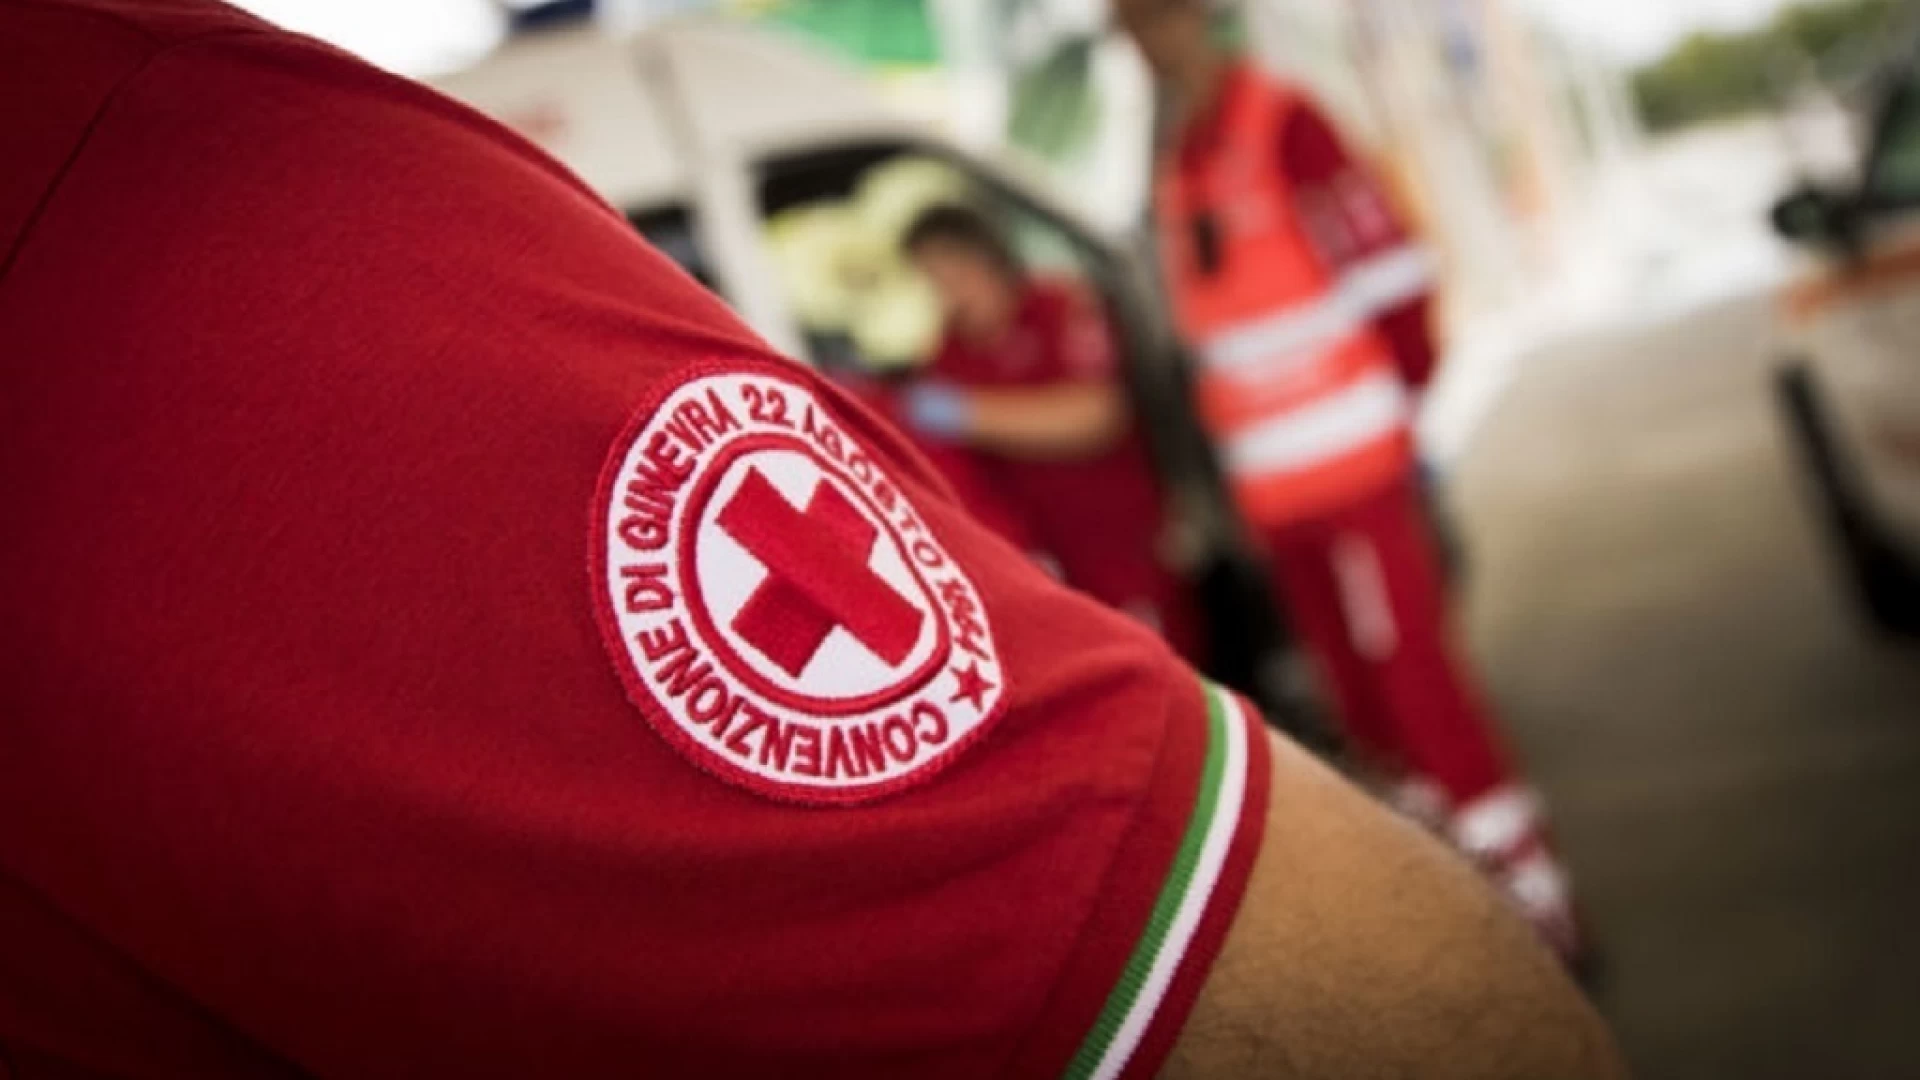 Fornelli: martedì 8 settembre test sierologici alla cittadinanza eseguiti dalla Croce Rossa Italiana